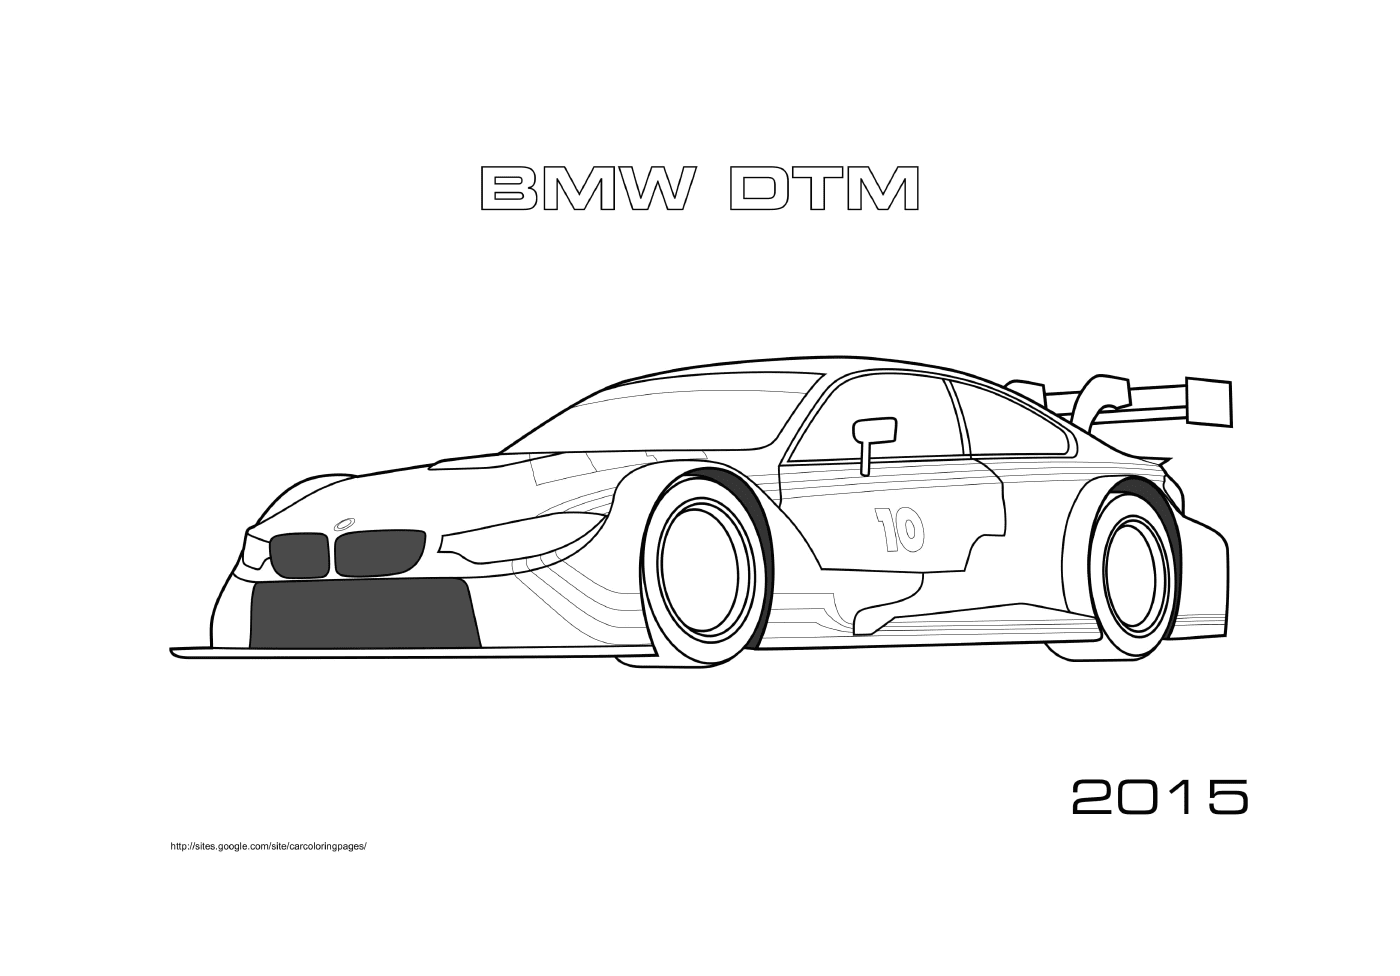   BMW DTM de 2015 